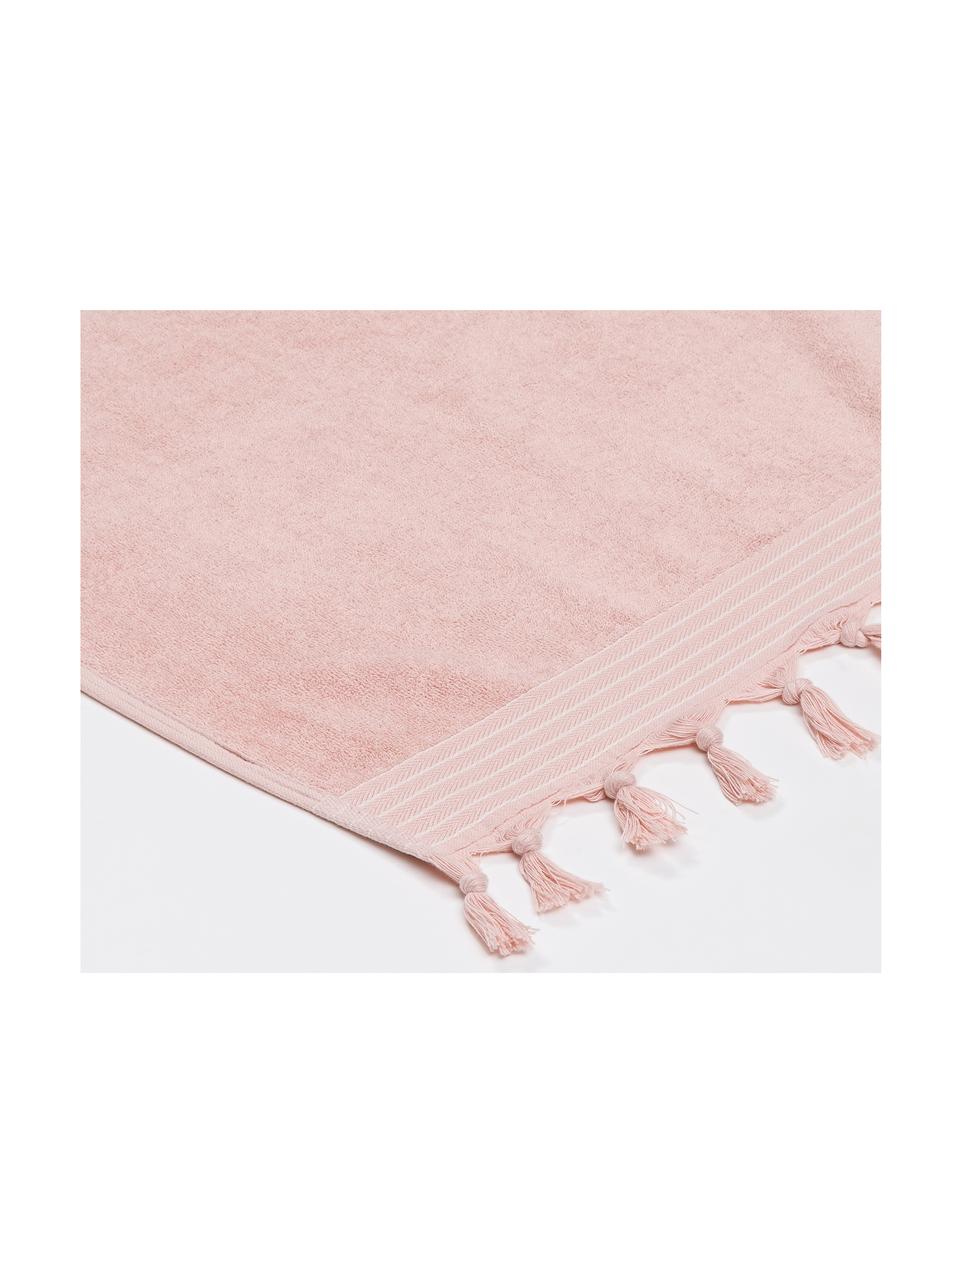 Hamamdoek Soft Cotton met achterzijde van badstof, Roze, wit, 100 x 180 cm